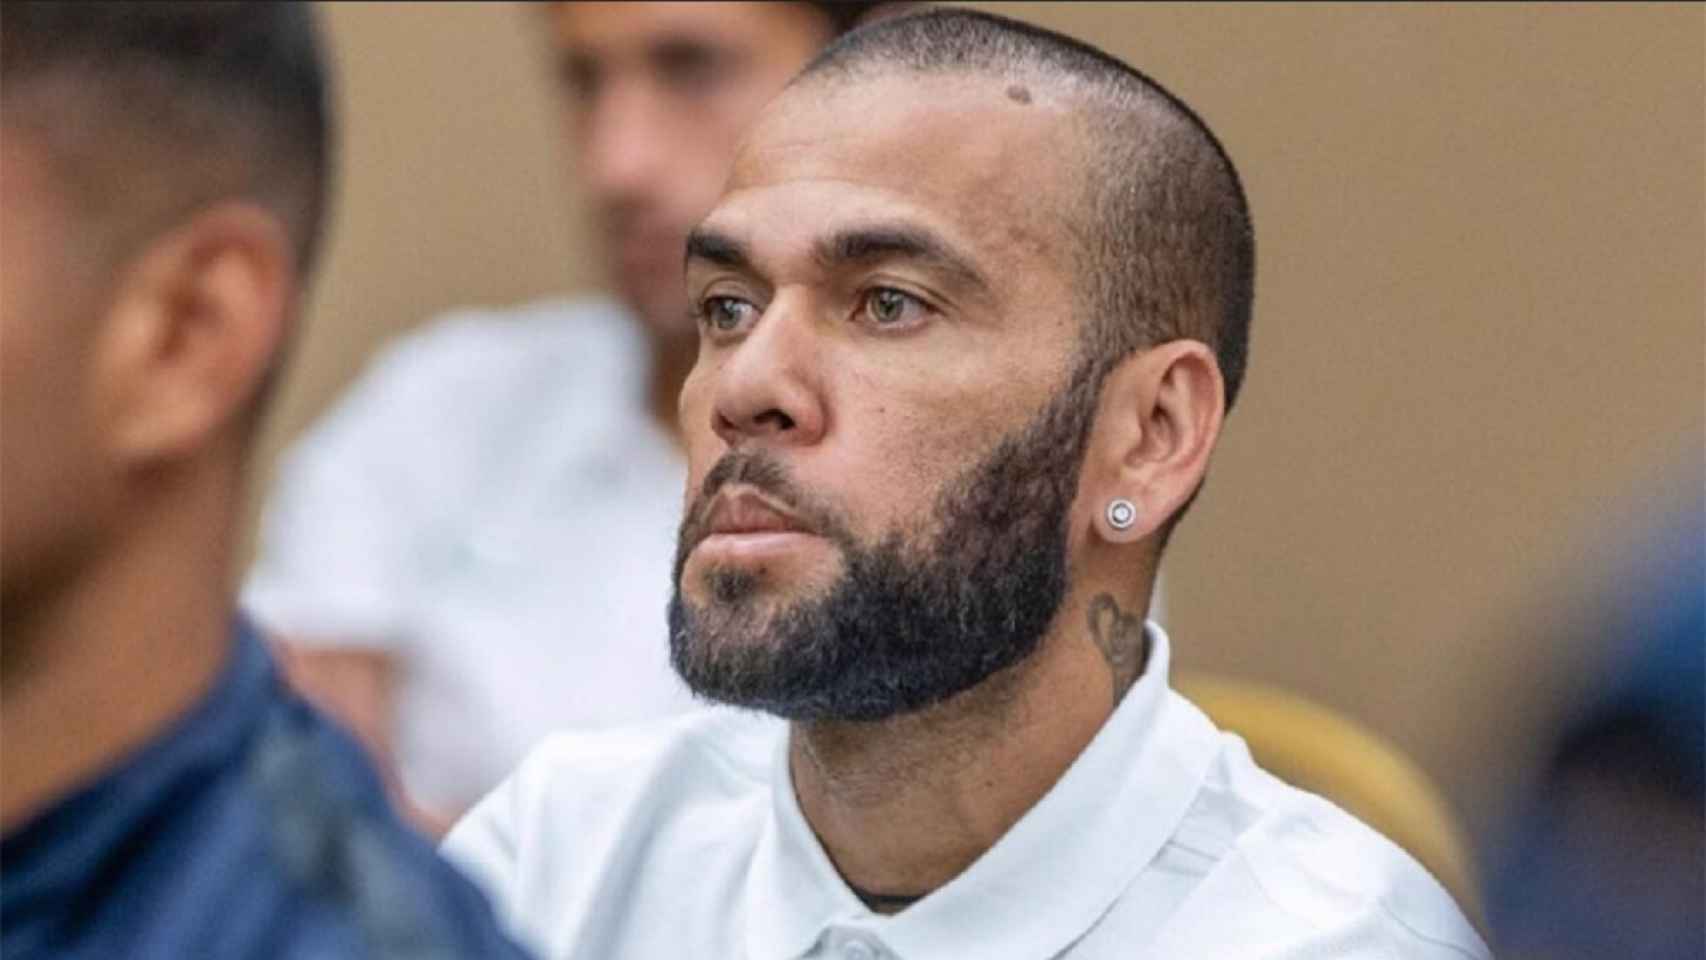 Dani Alves, detenido al ser acusado de presunta agresión sexual en Barcelona